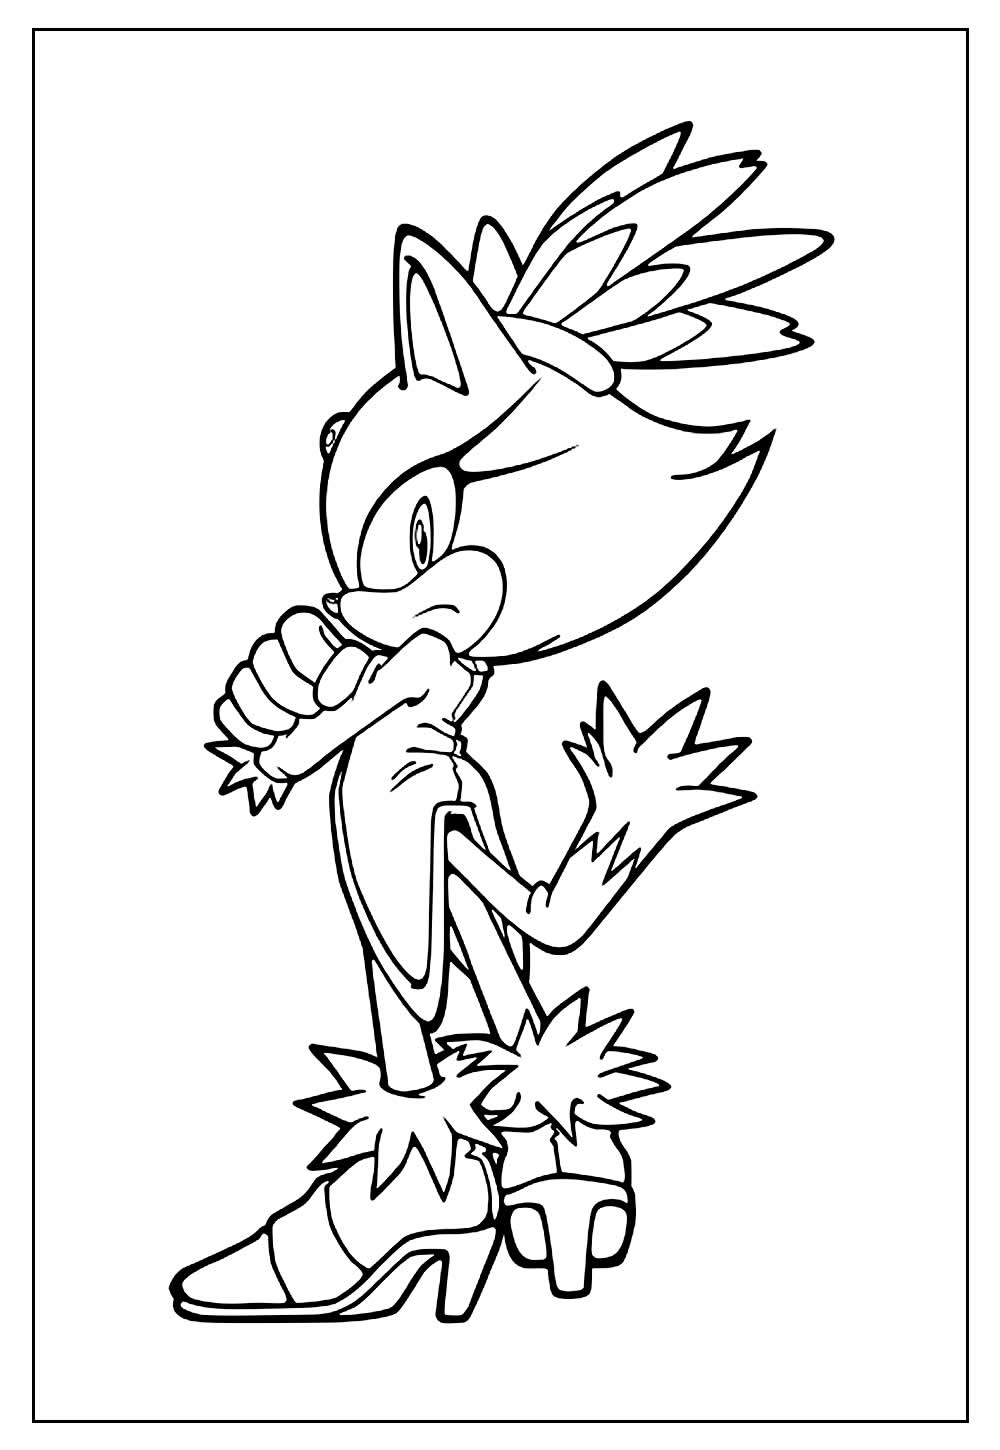 Desenhos do Sonic para colorir - Blaze the Cat